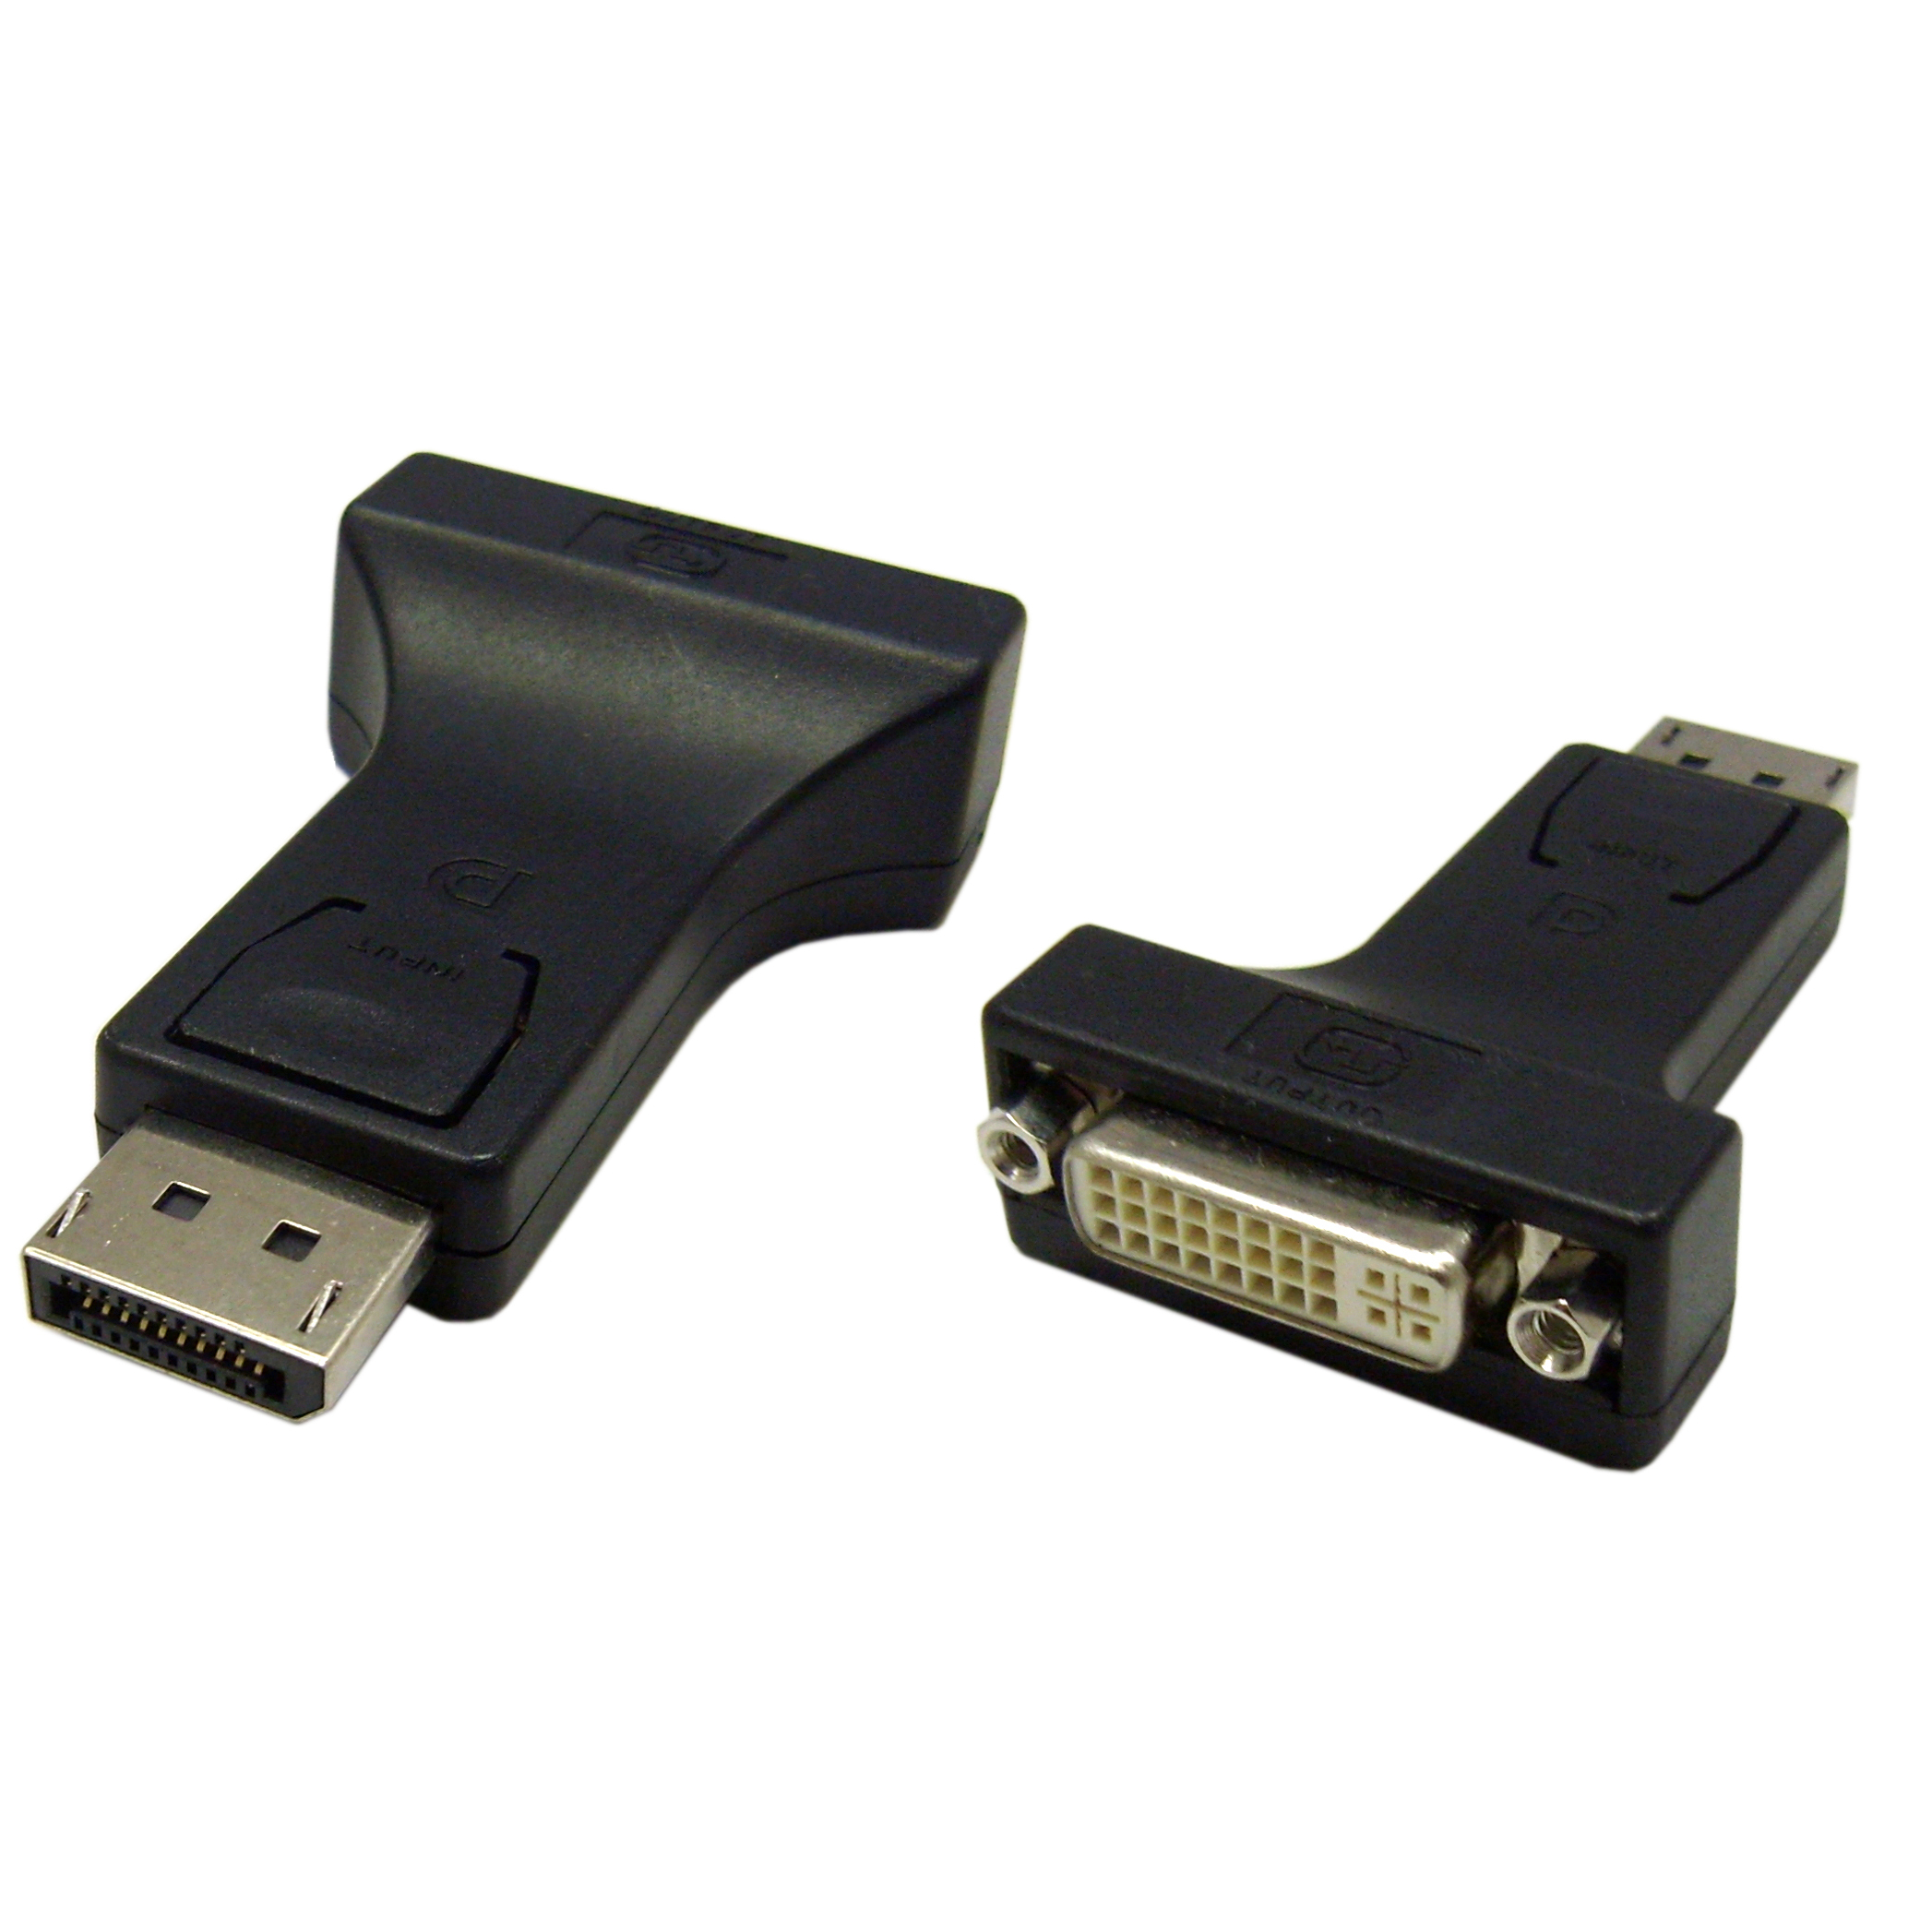  - OcUK Value DisplayPort To DVI Adaptor [HDHDPORT-001]